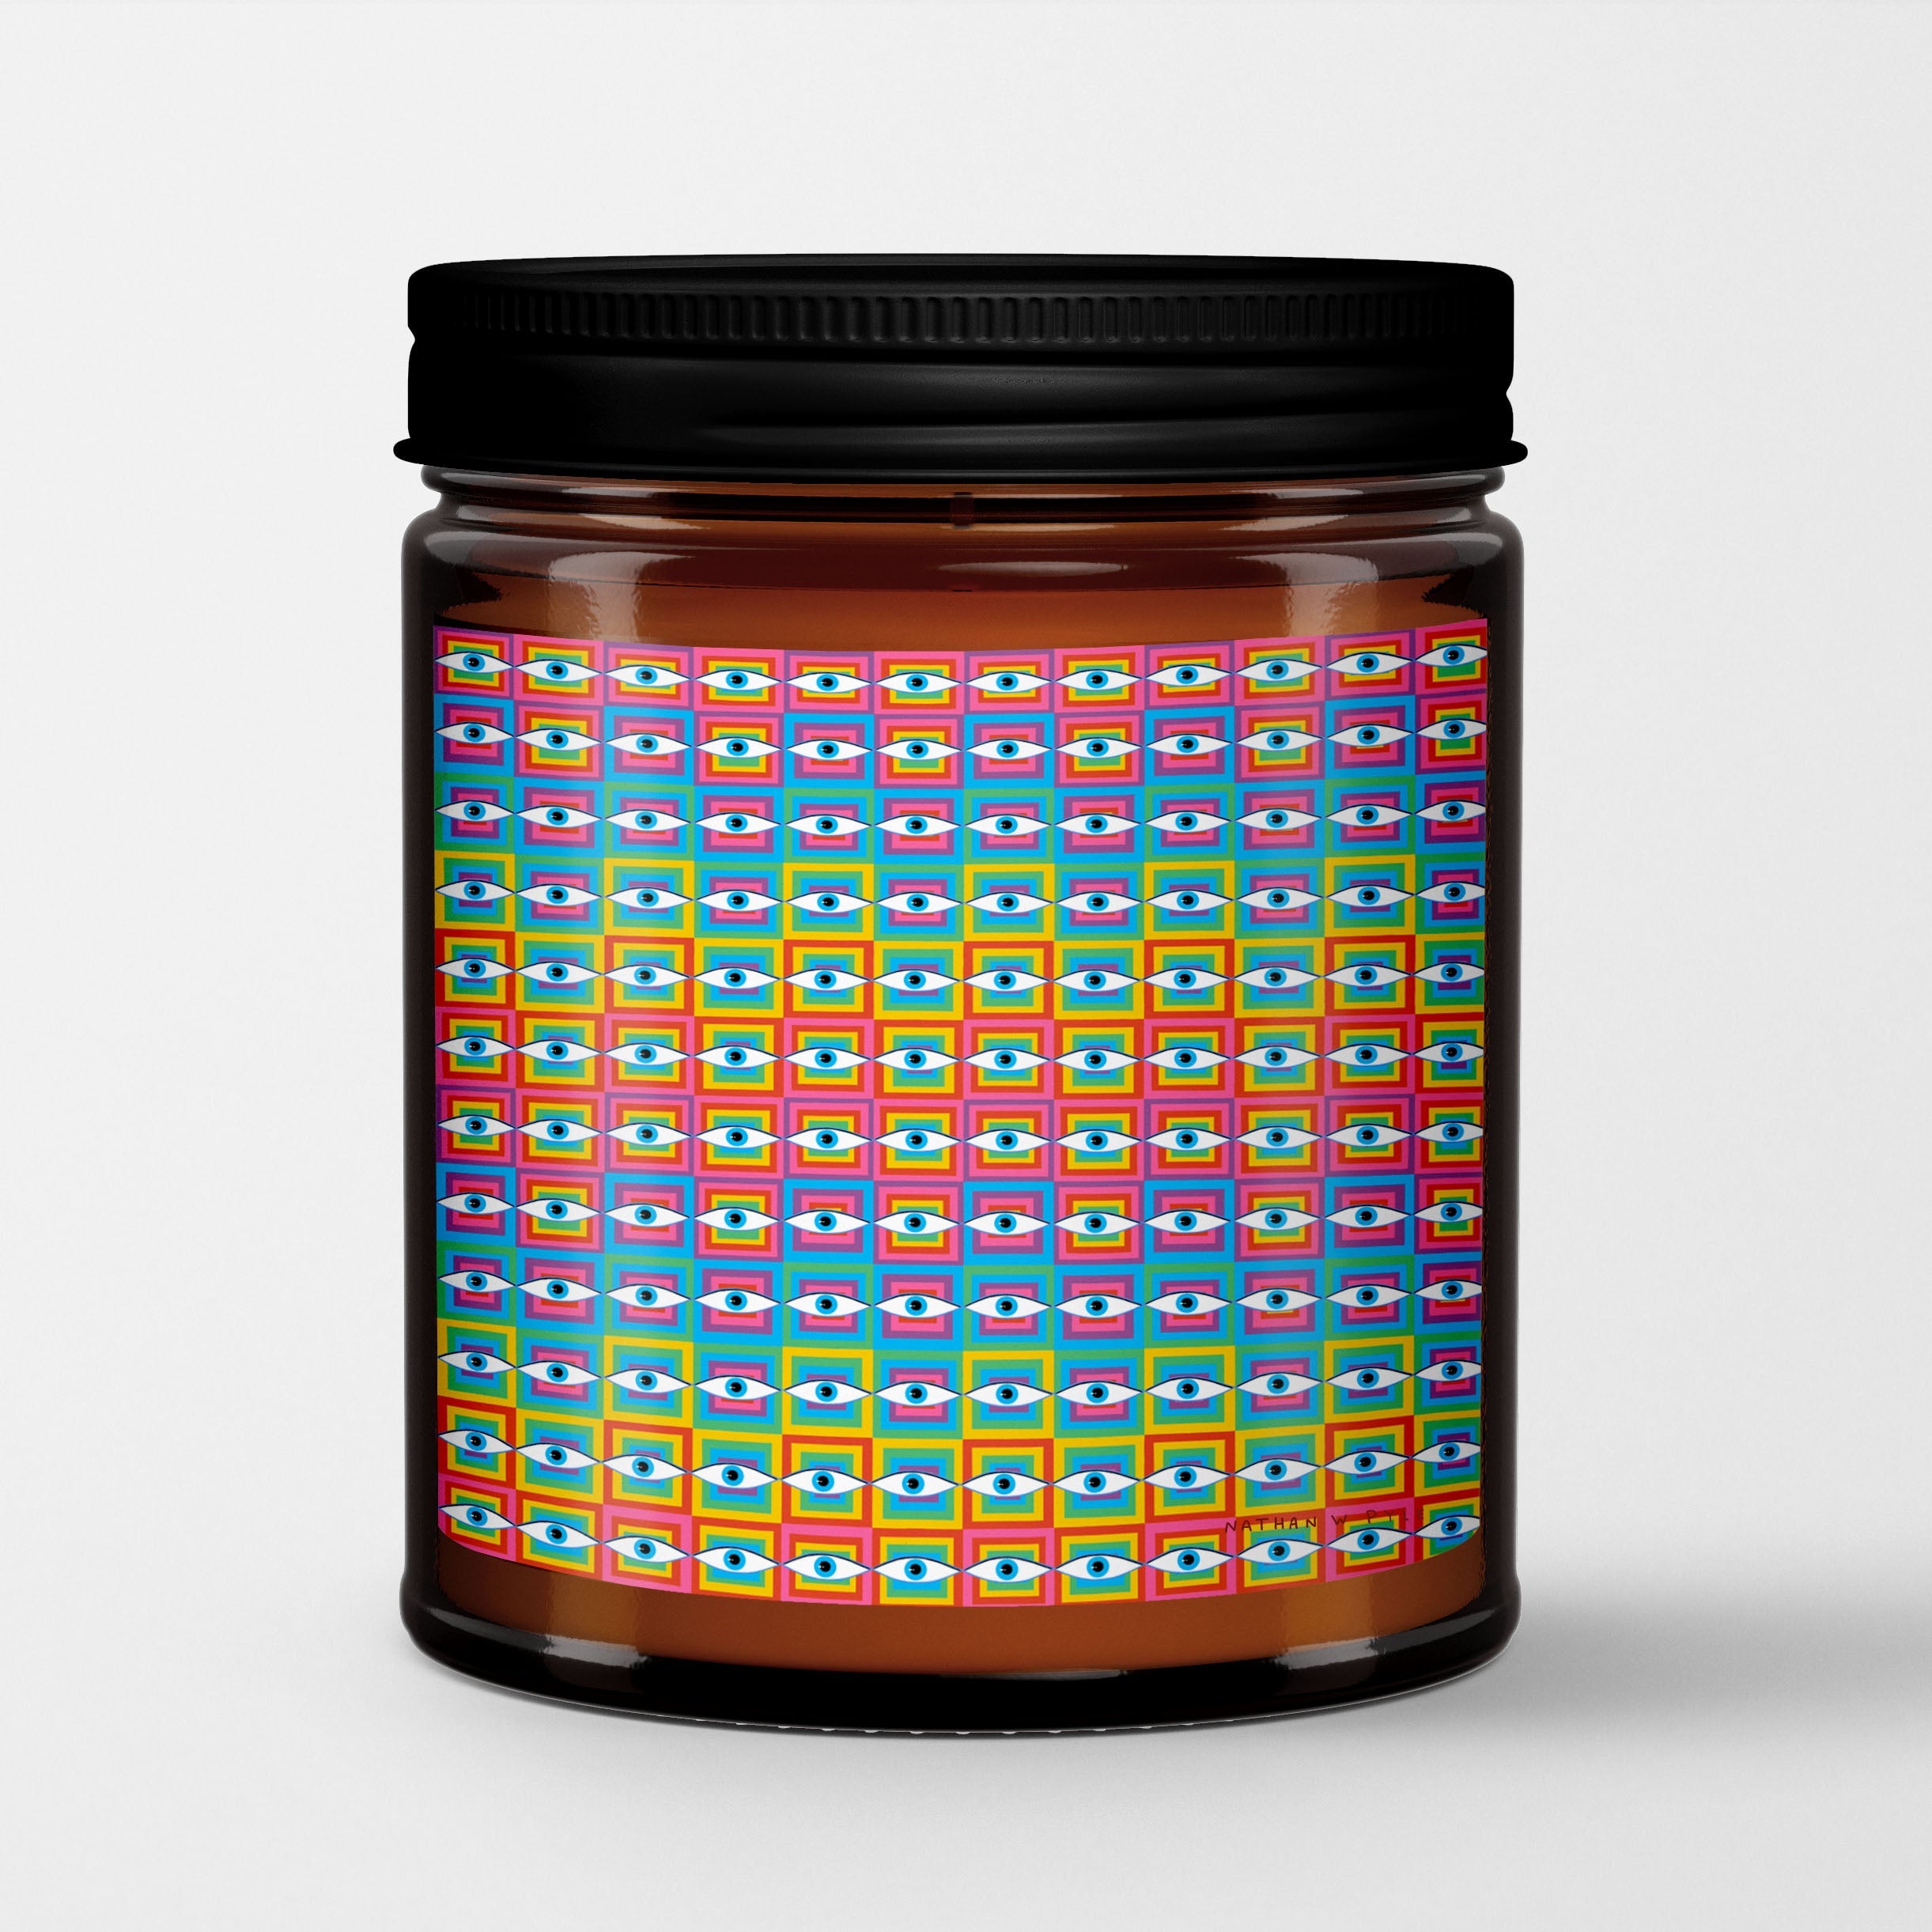 Vivillus Scented Candle in Amber Glass Jar | Eye See | Vivien Keidel